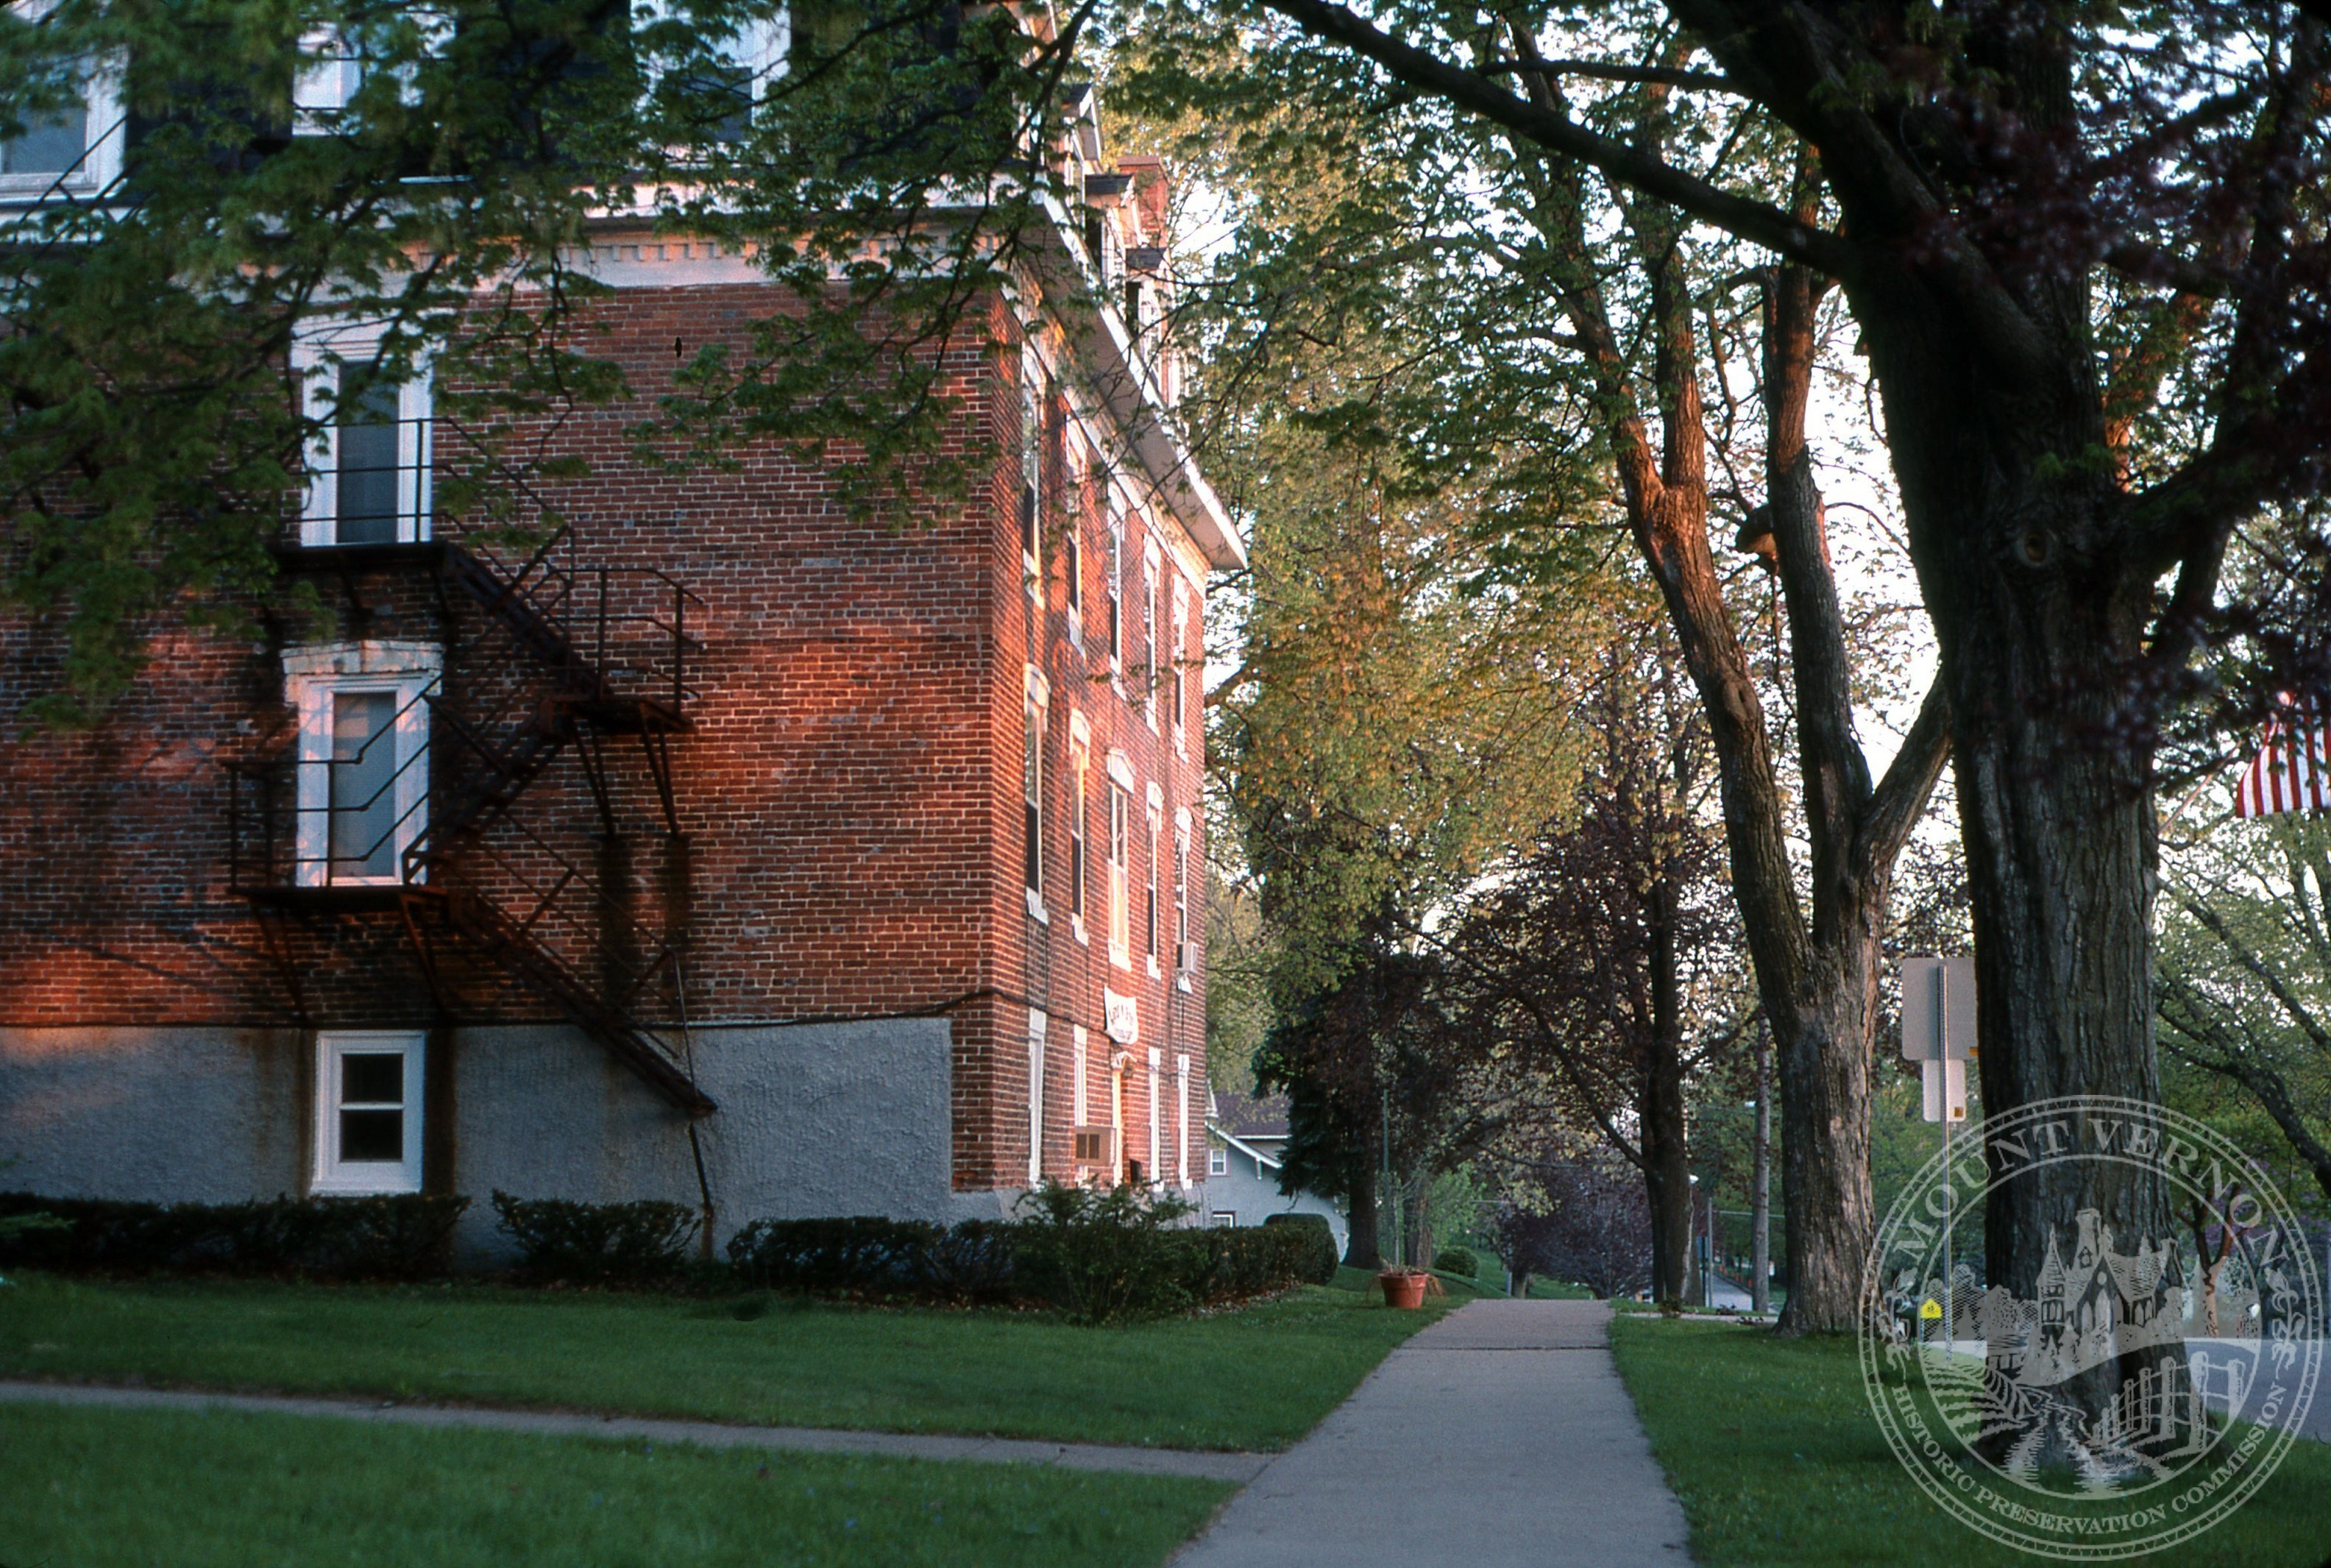 Photo of apartment house next to Methodist Church - 2002